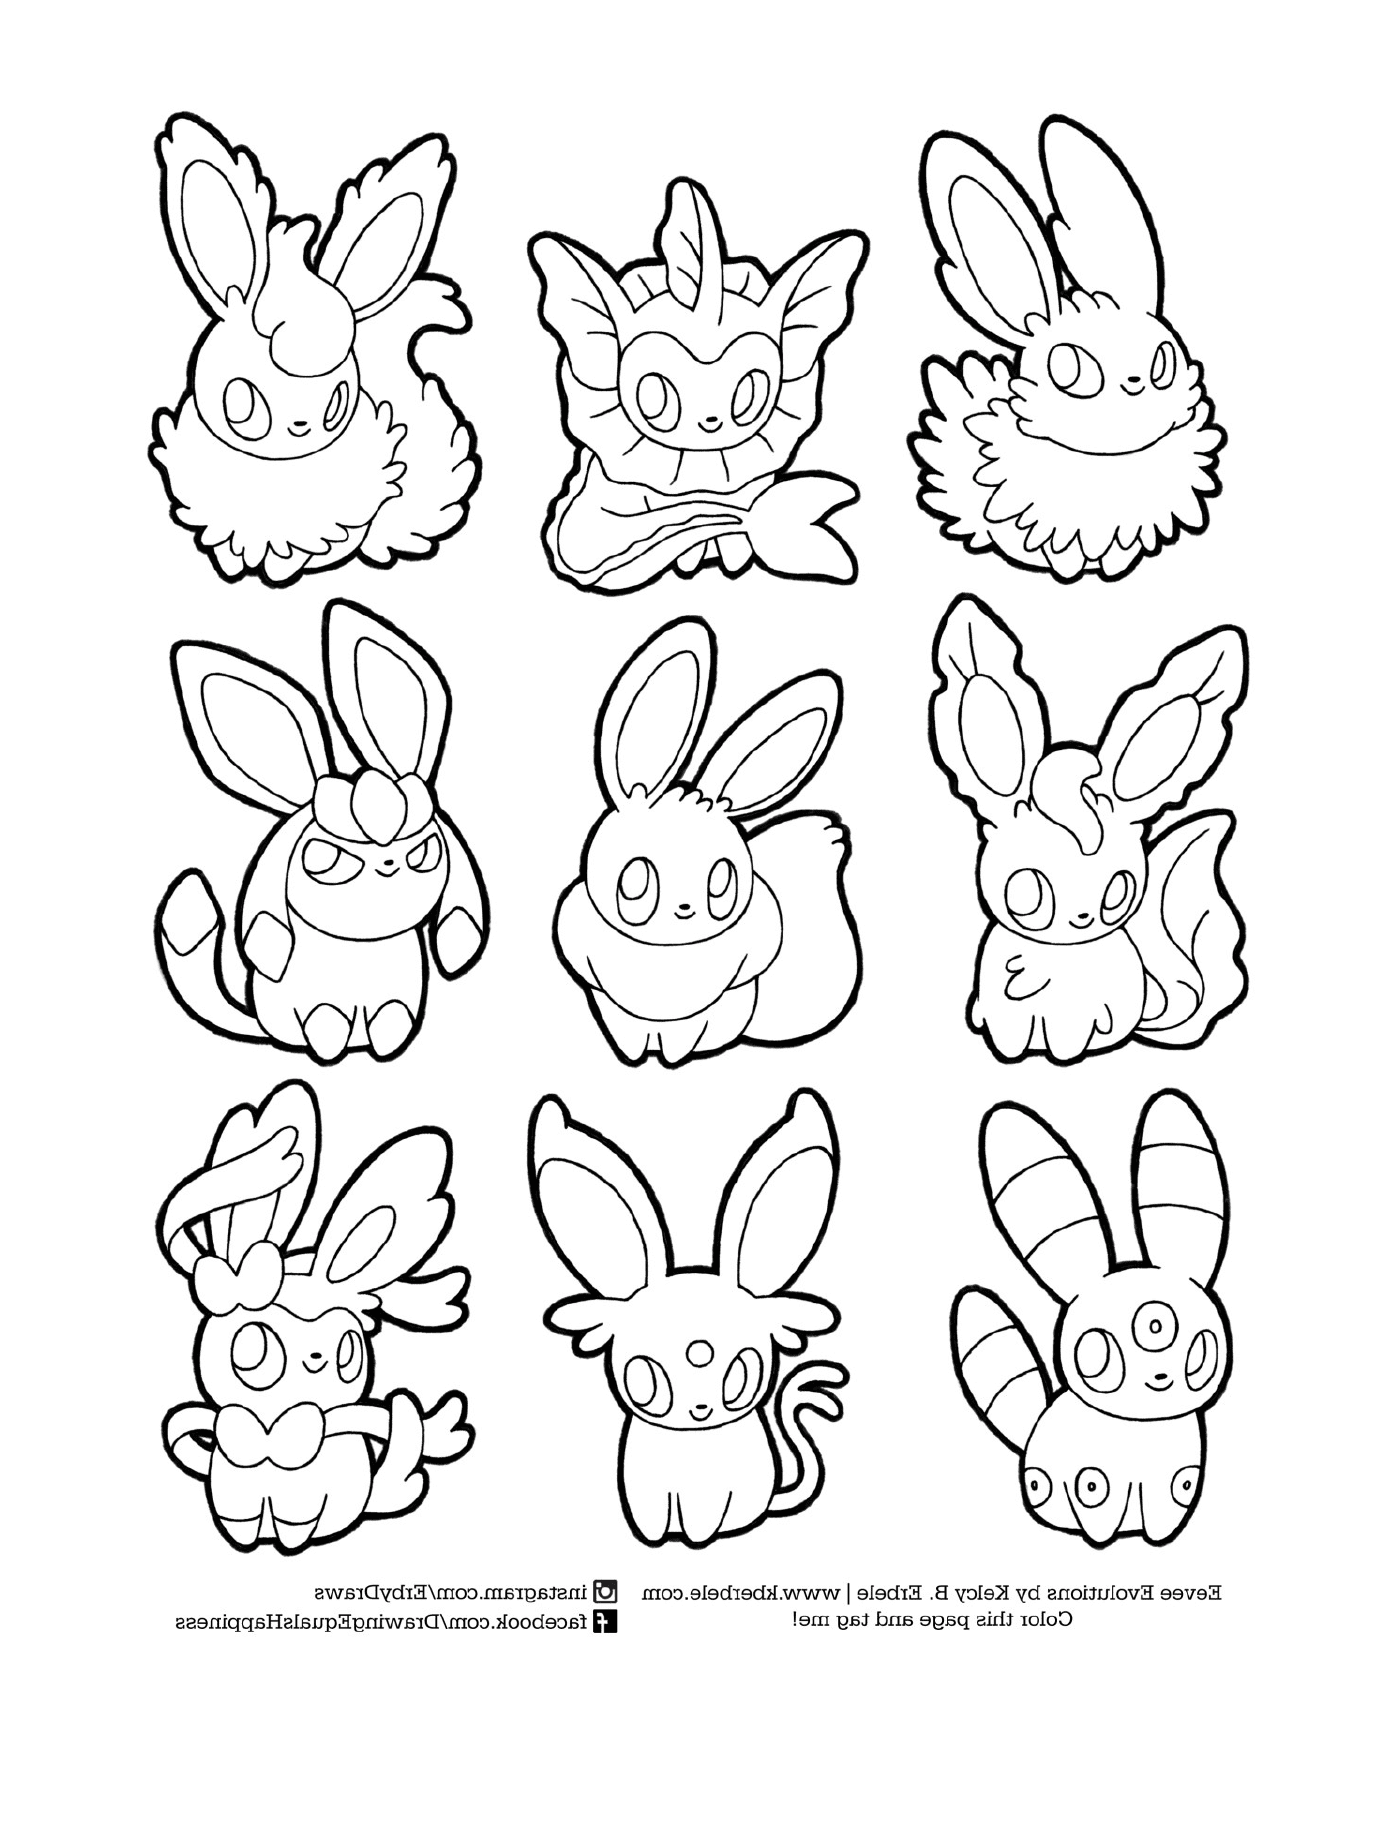  Evoluzione di Evoli, set di nove conigli fumetti 